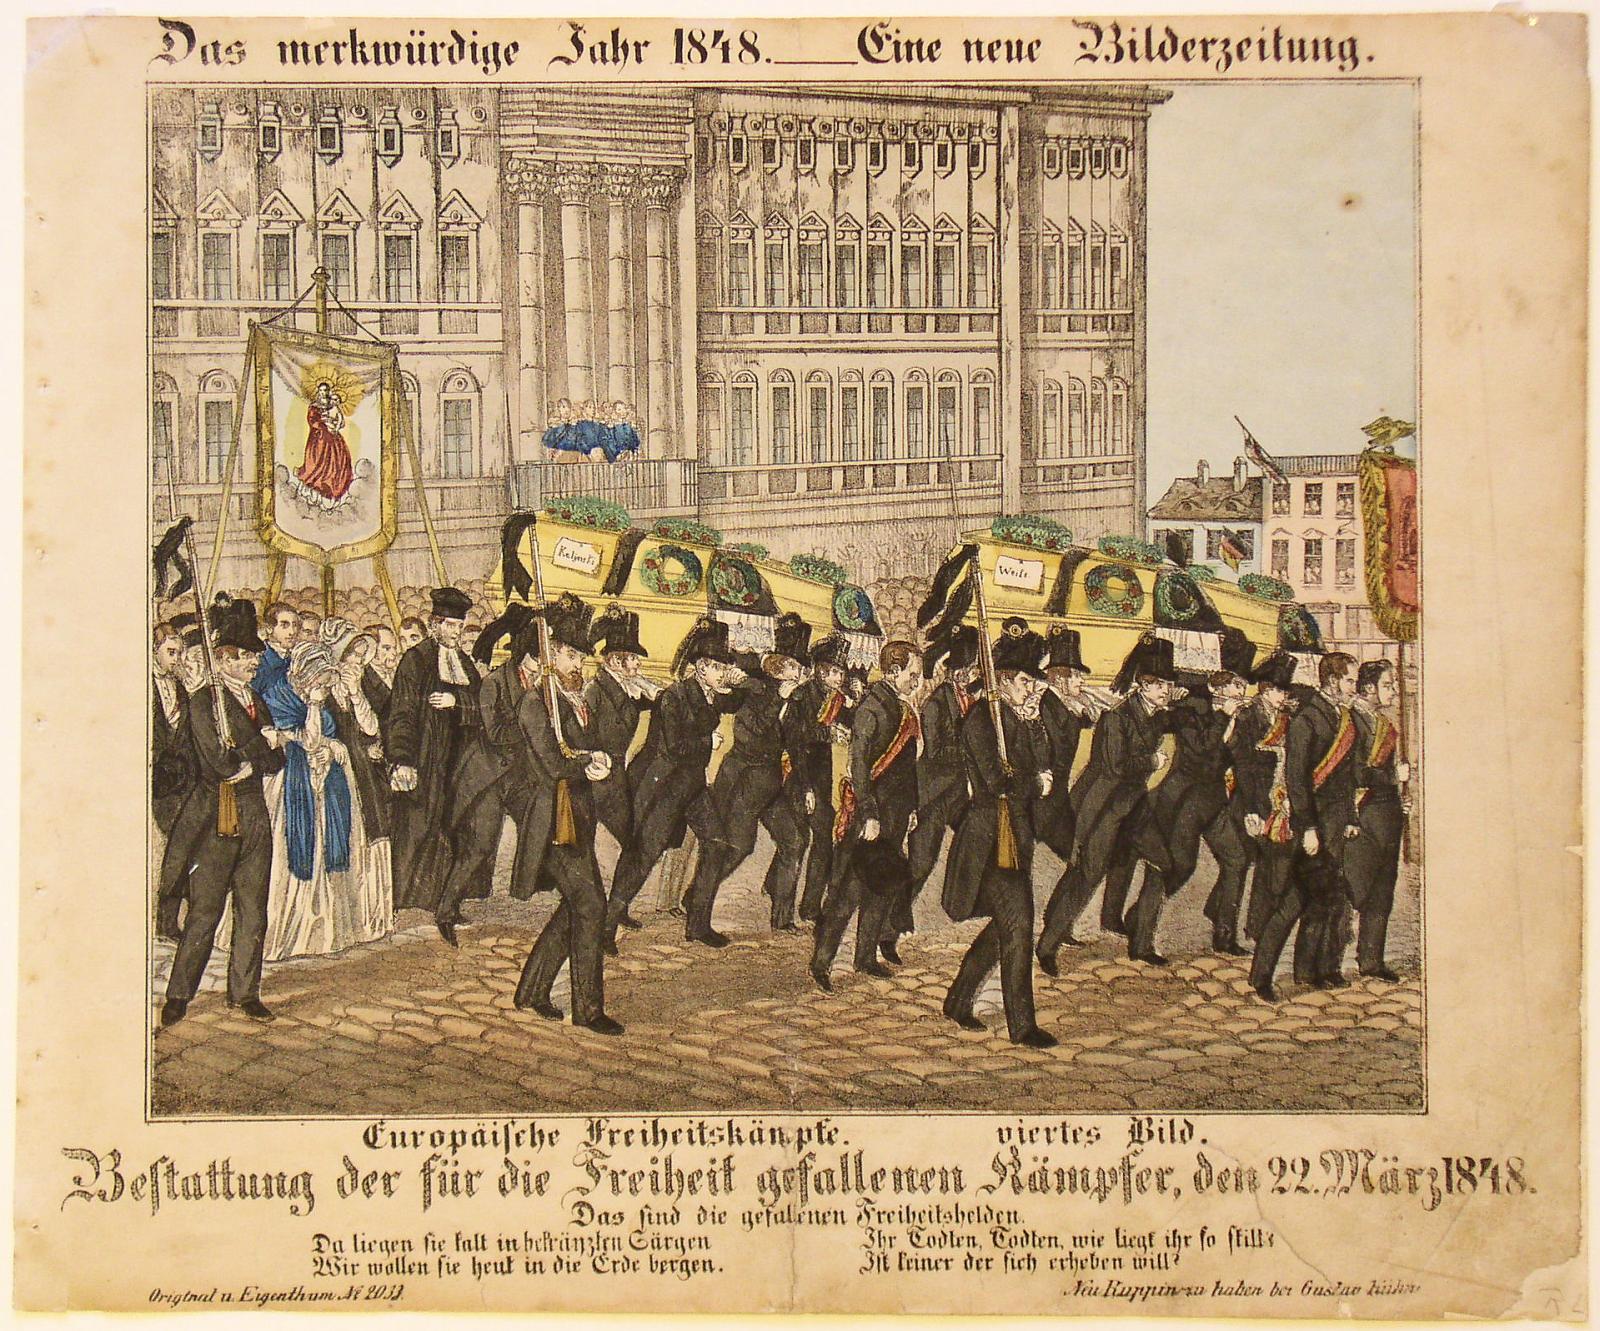 [Grafik: Bestattung der für die Freiheit gefallenen Kämpfer, den 22. März 1848]